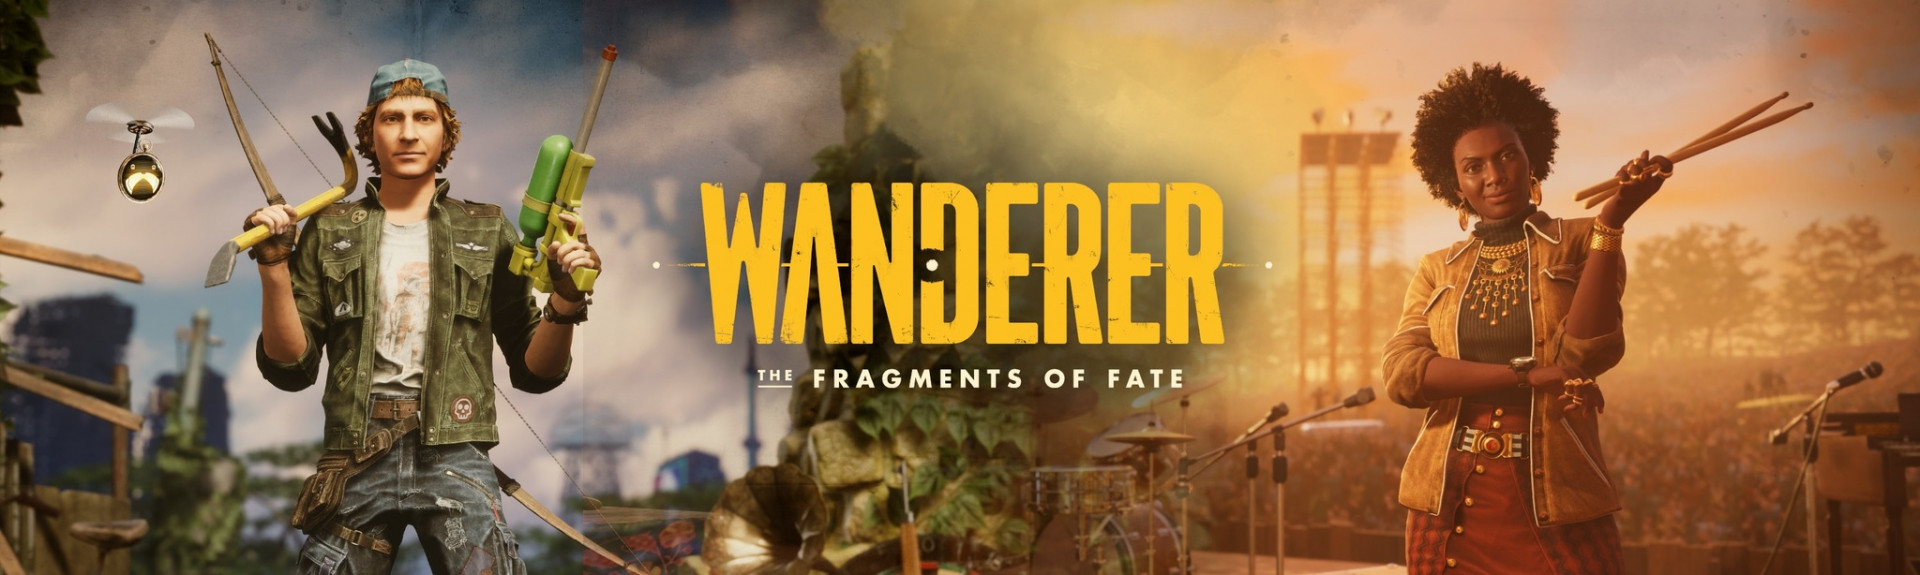 Actualización: Wanderer retrasa su lanzamiento al 12 de septiembre